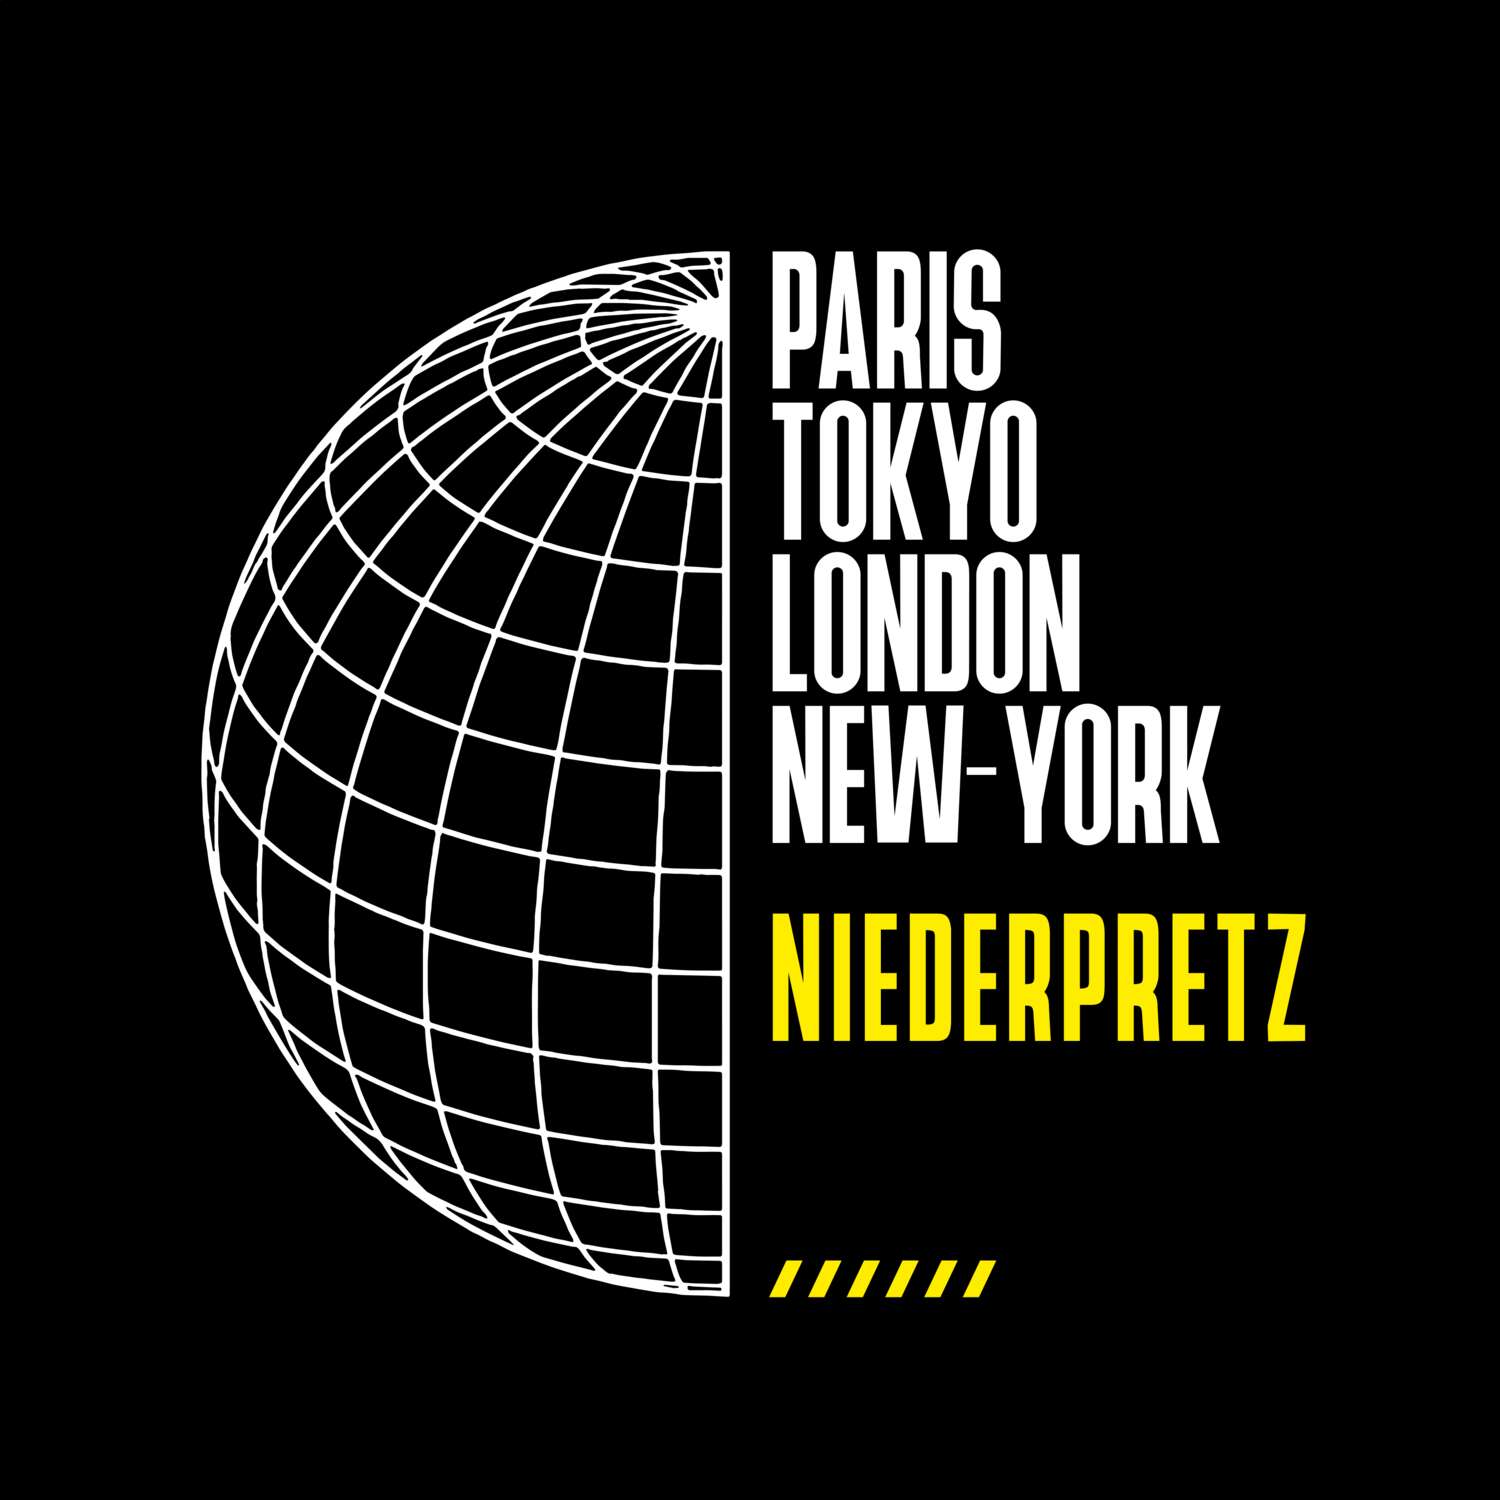 Niederpretz T-Shirt »Paris Tokyo London«